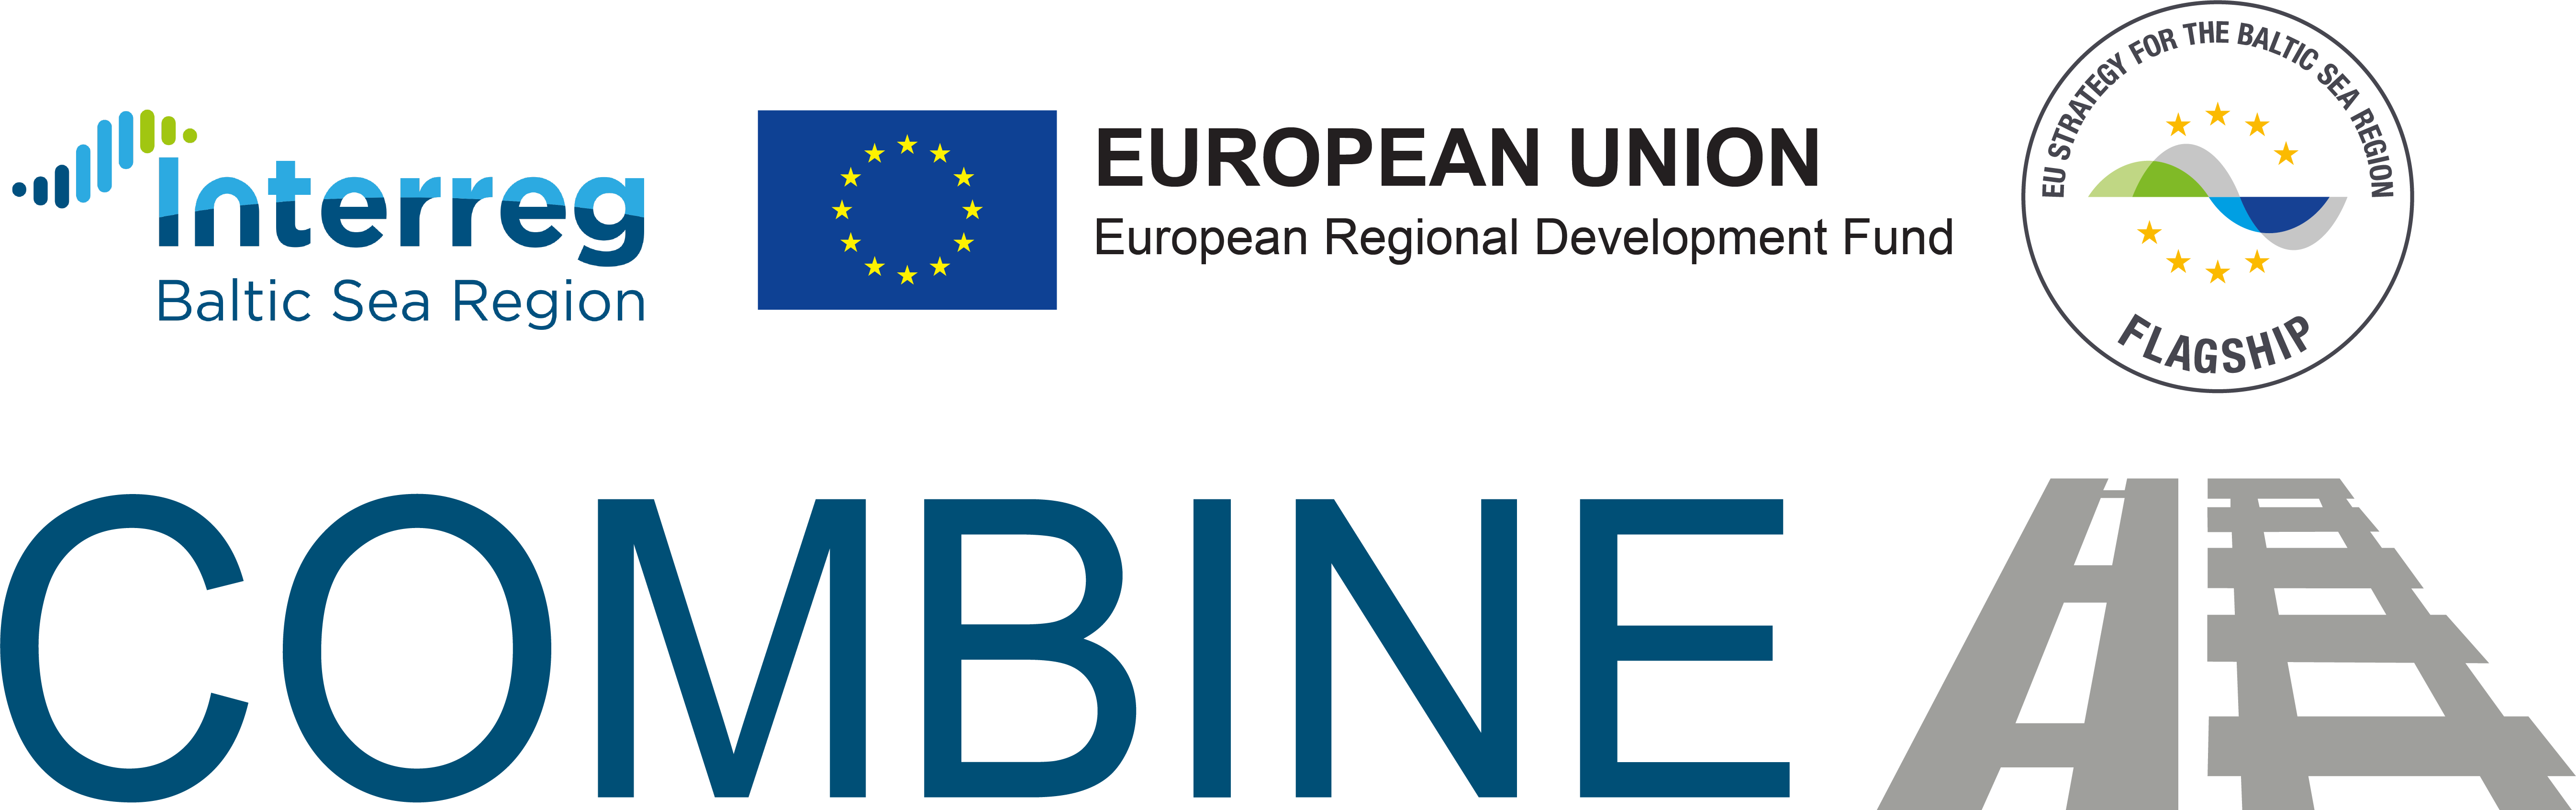 Logotype Combine märkt med finansiärer till projektet: EU, Interreg och flagship.